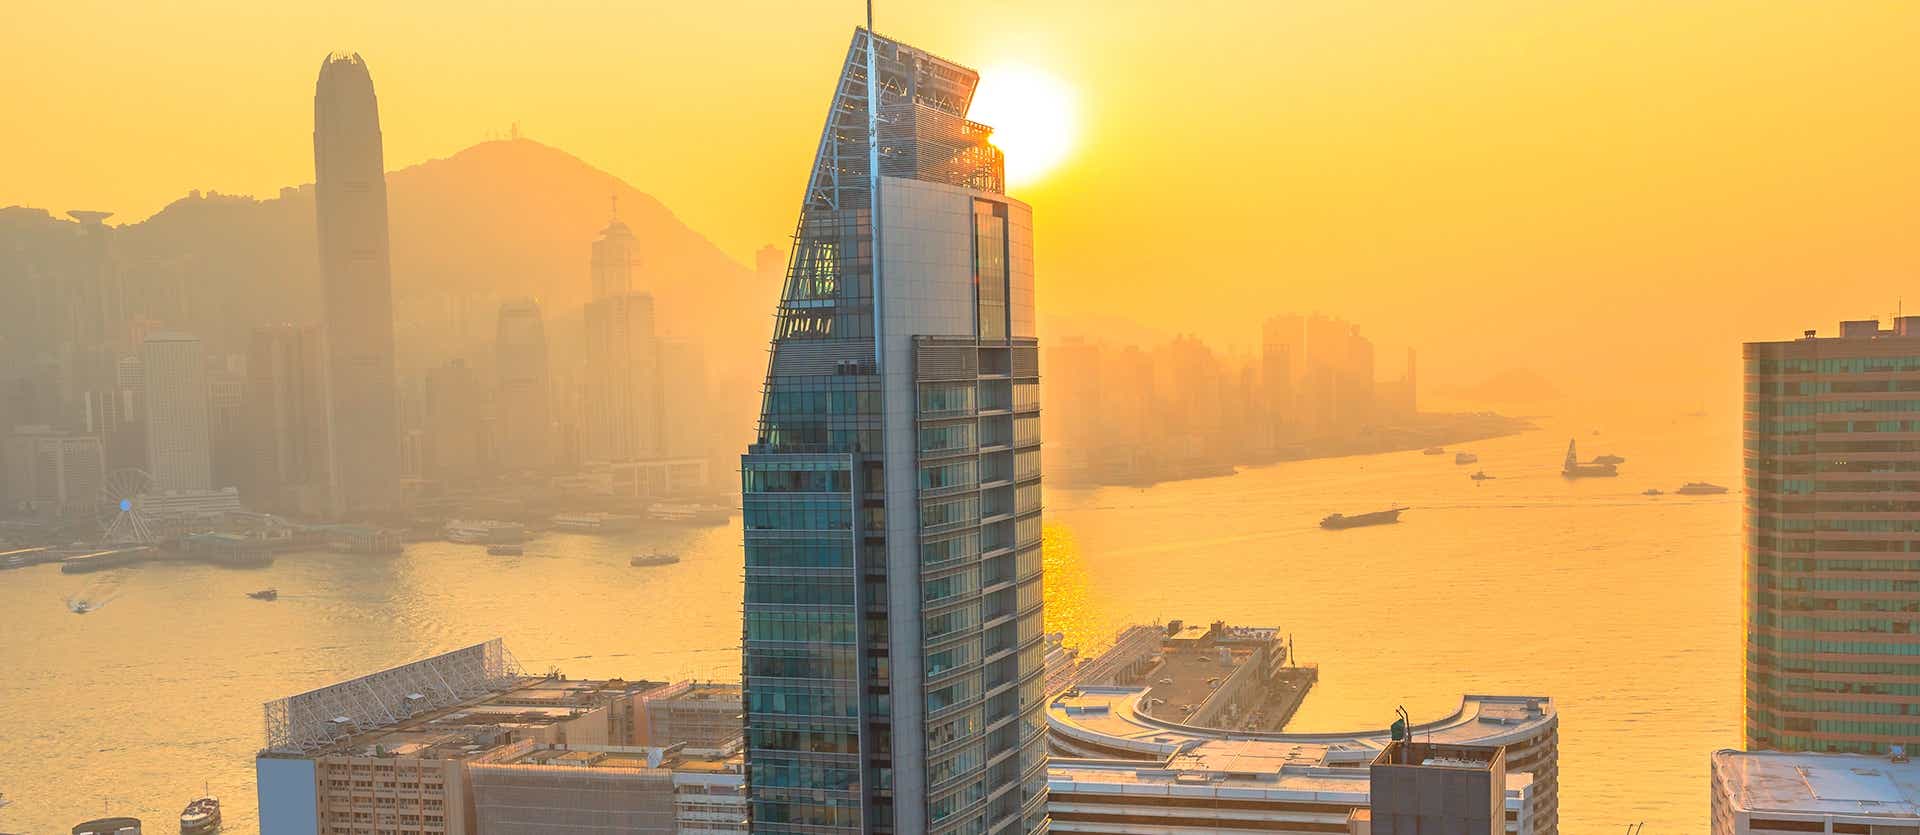 Sunset <span class="iconos separador"></span> Hong Kong